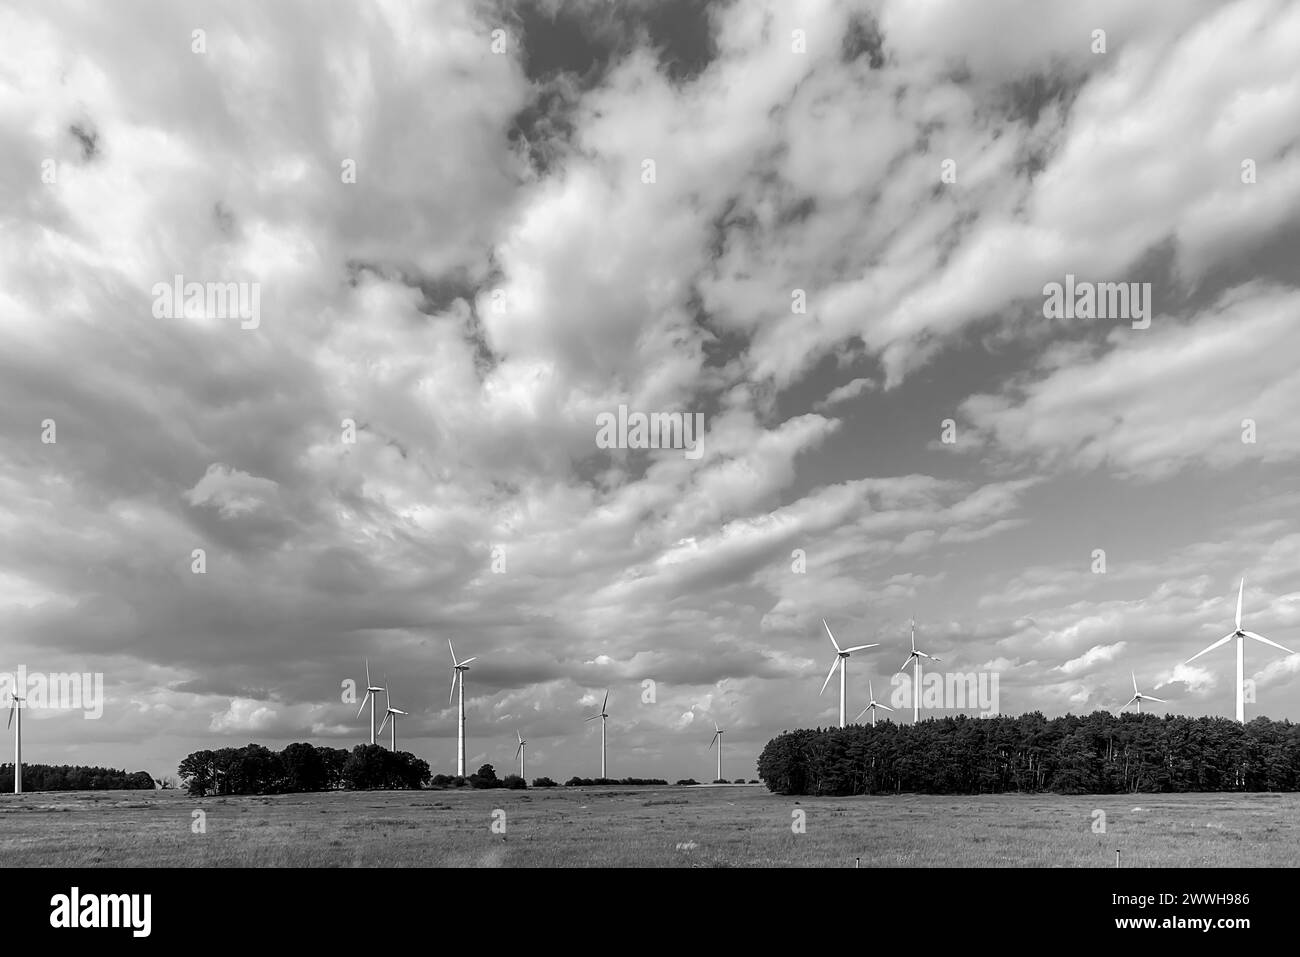 Éoliennes sur l'autoroute A 9, ciel nuageux, Thuringe, Allemagne Banque D'Images